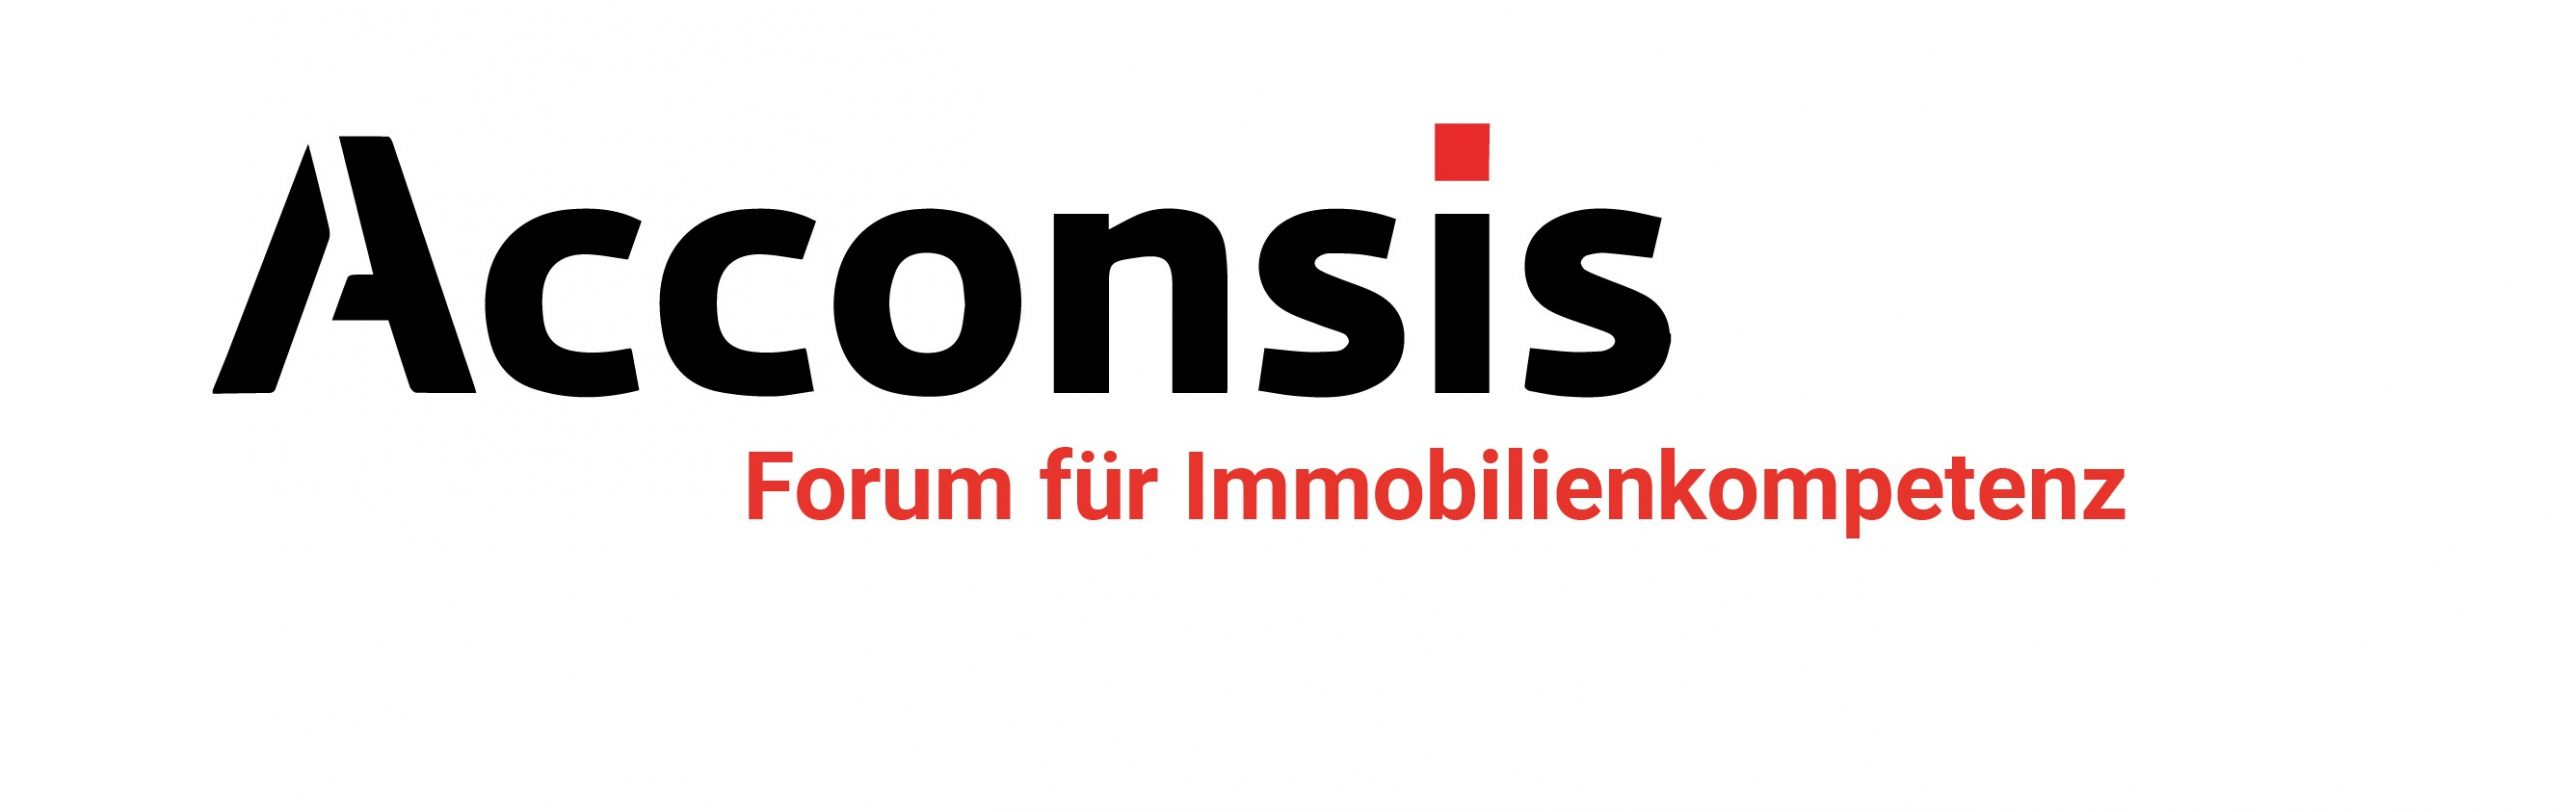 ACCONSIS – Forum für Immobilienkompetenz, München